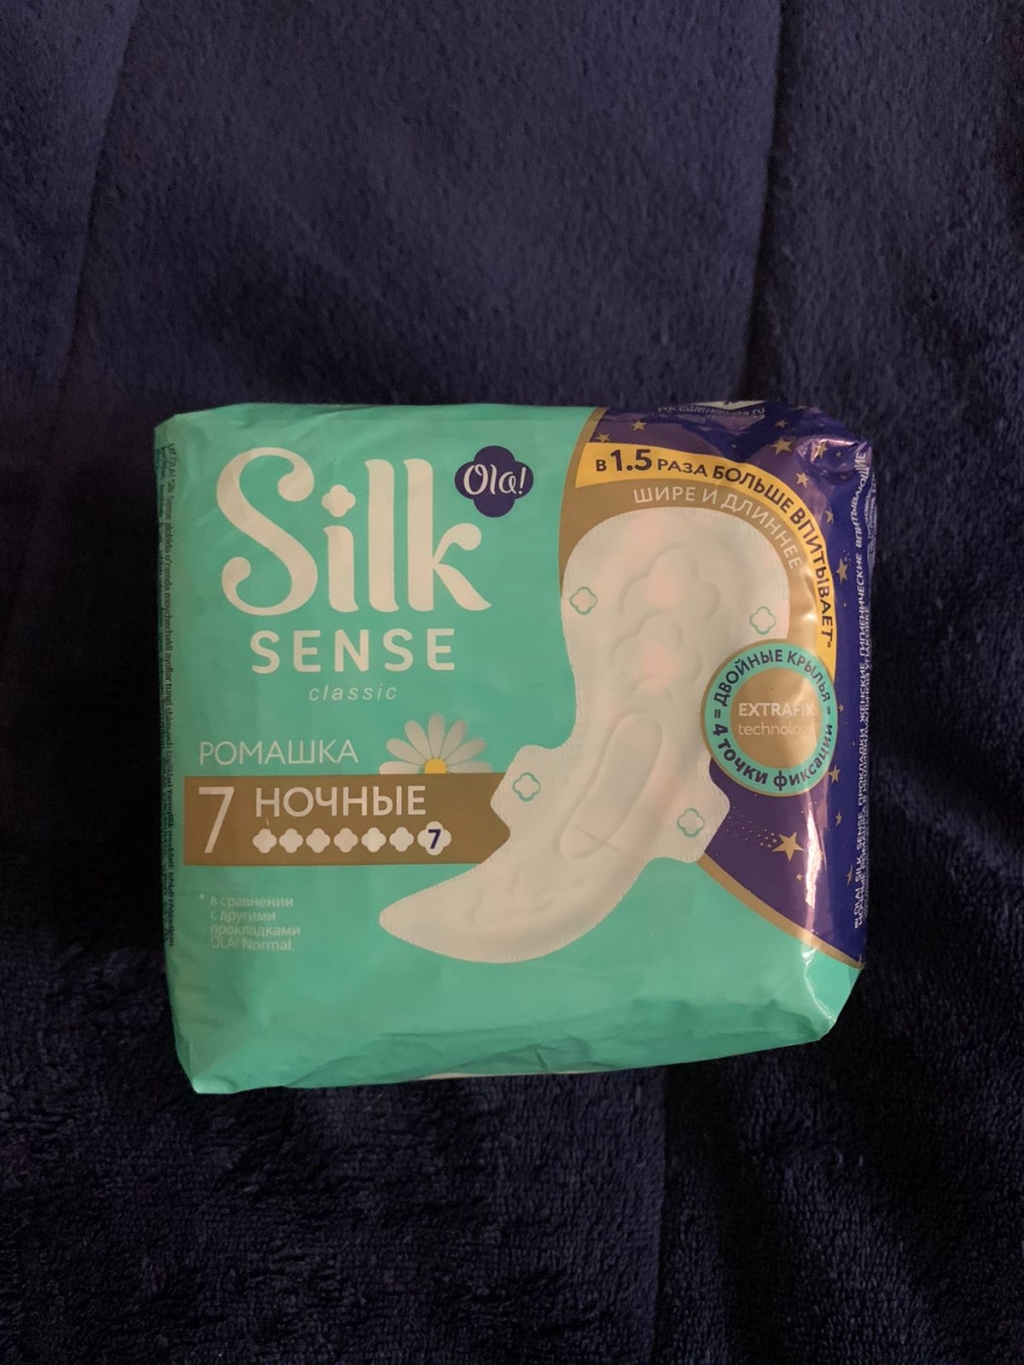 silk sense - Прокладки, которые спасают меня по ночам